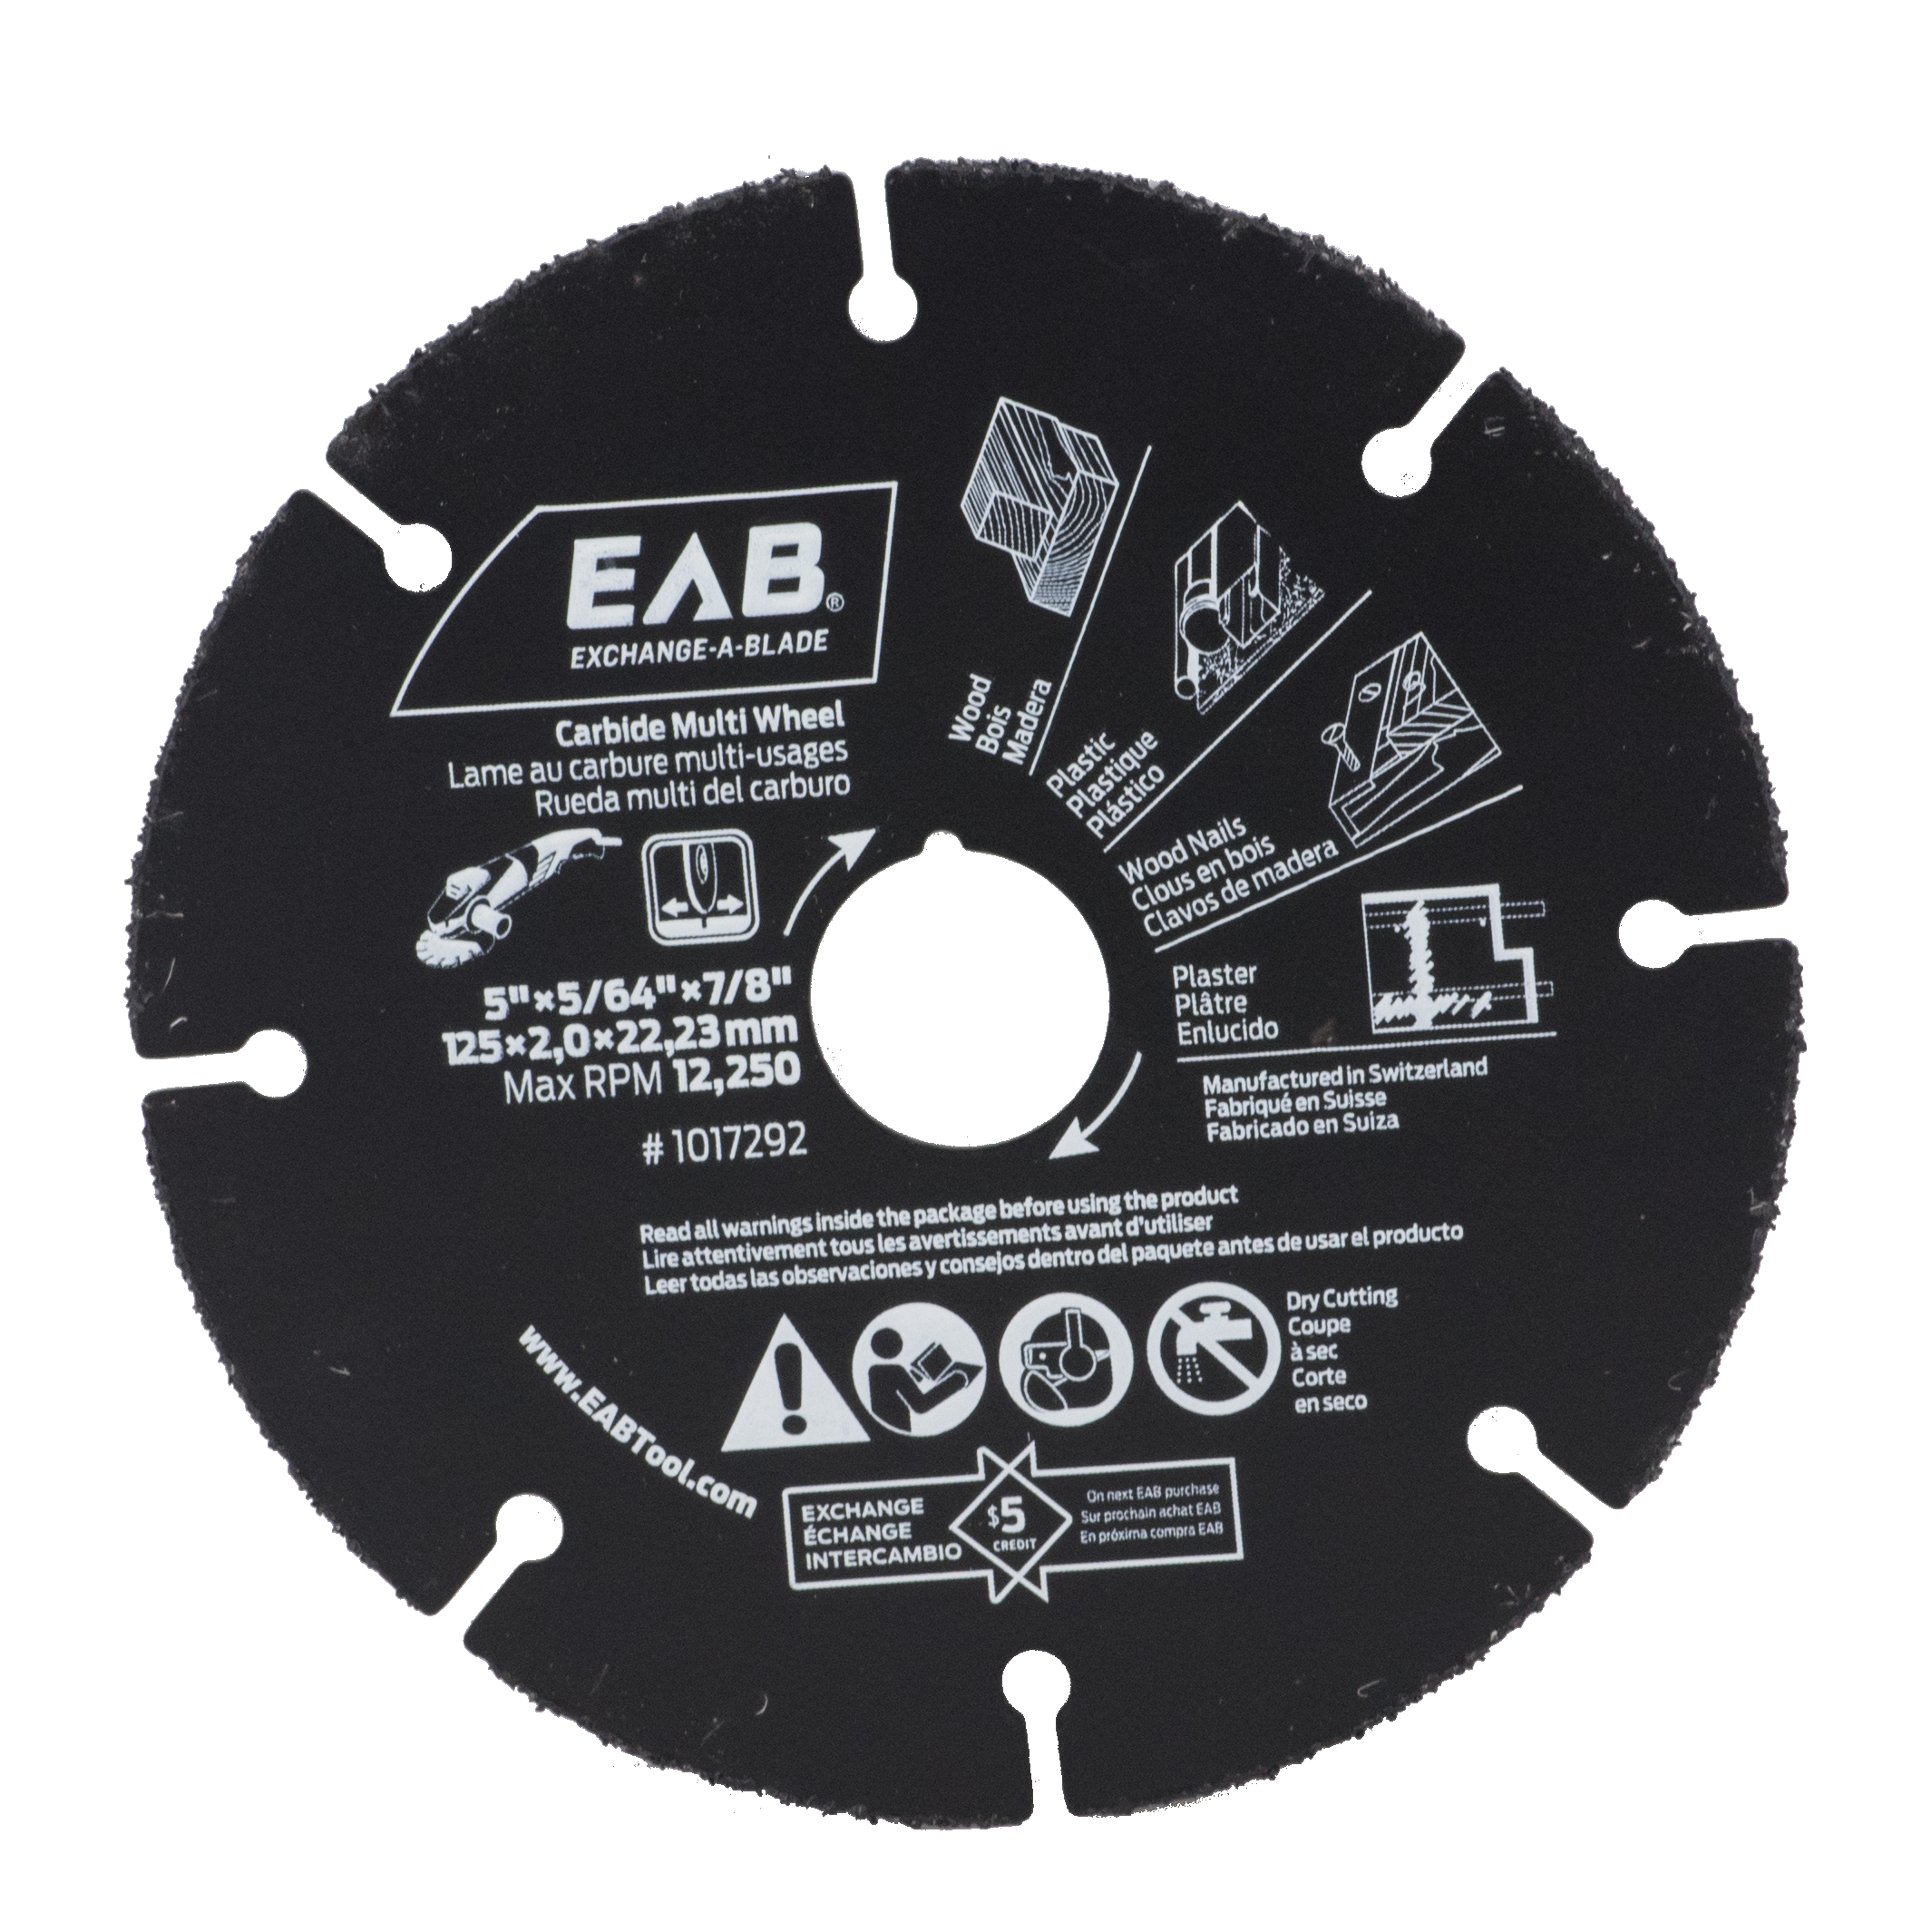 EAB (1017292) product